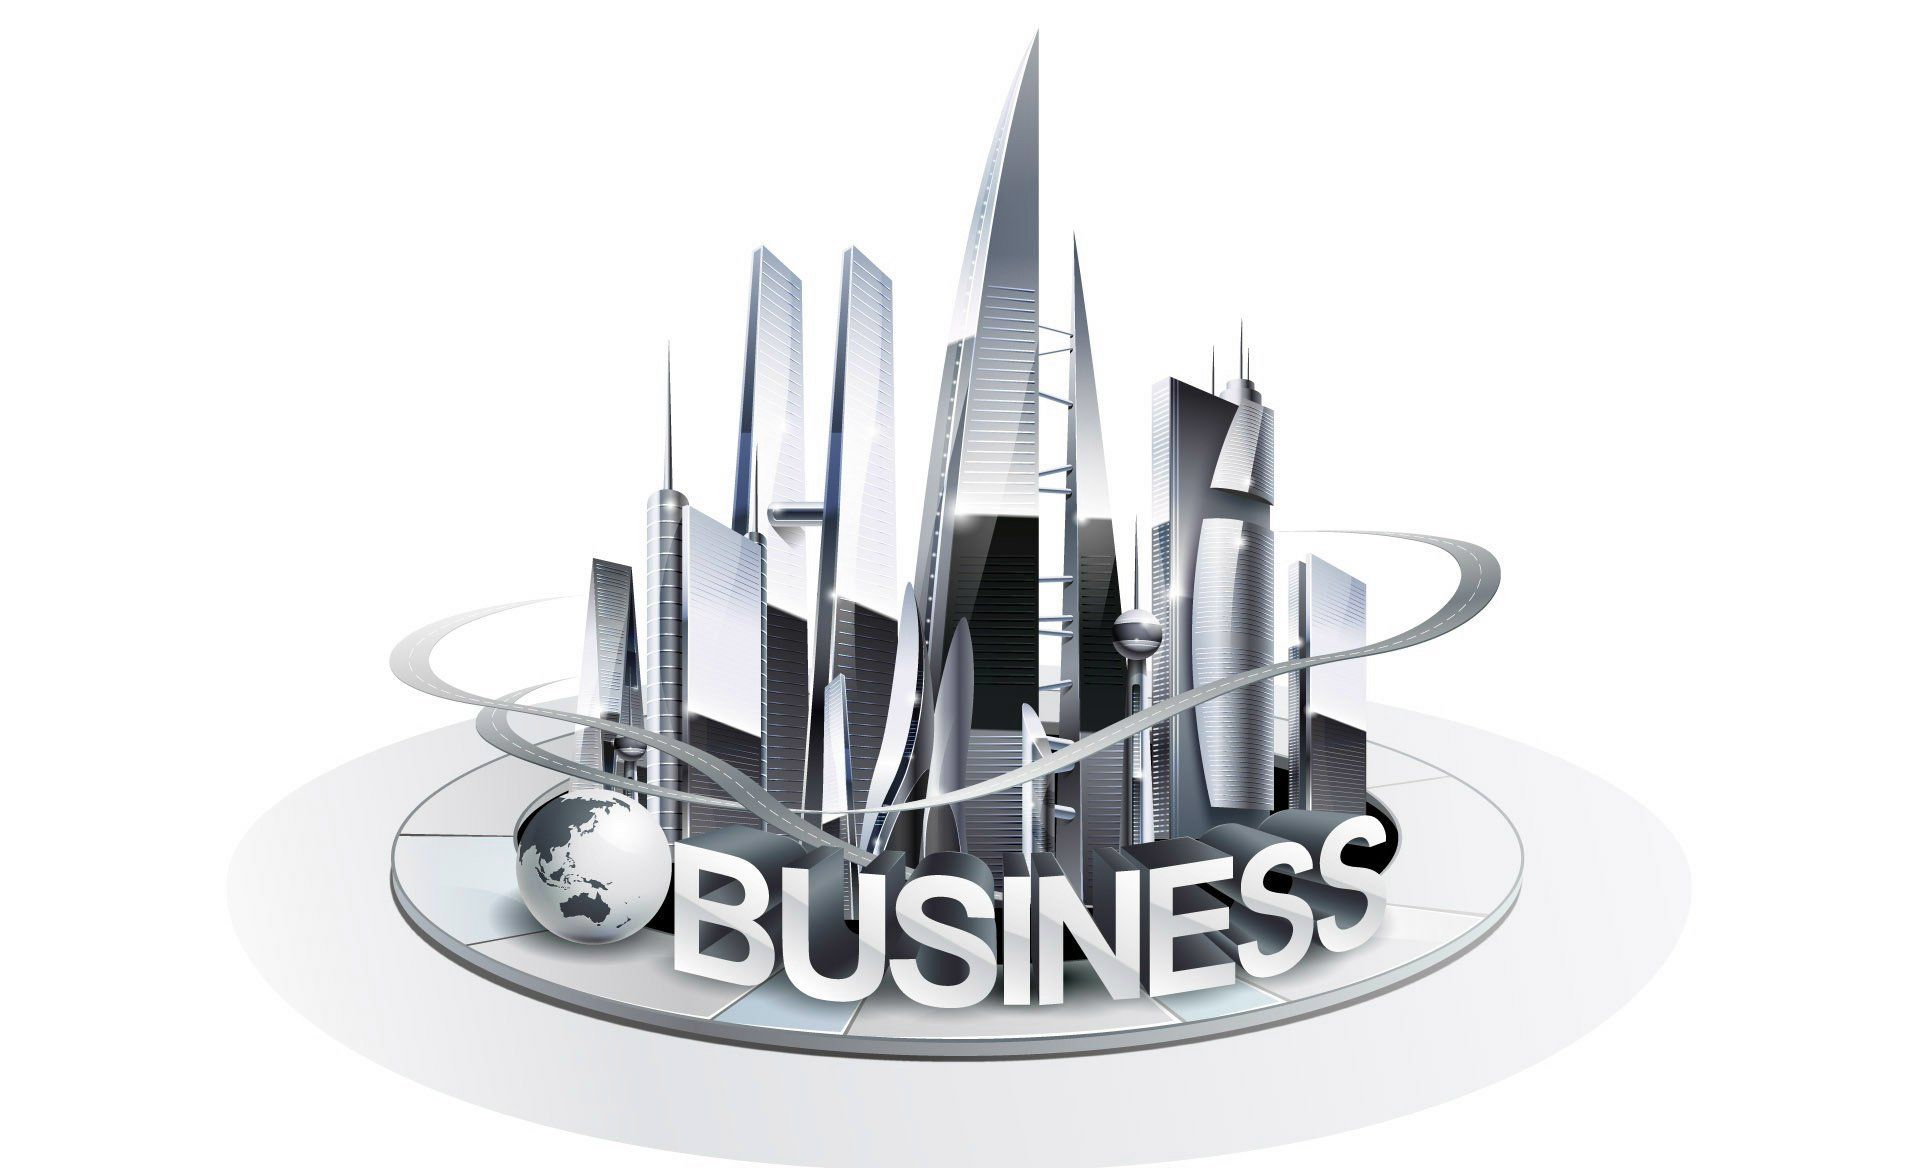 Access Business News As a Digital NewsSource 1